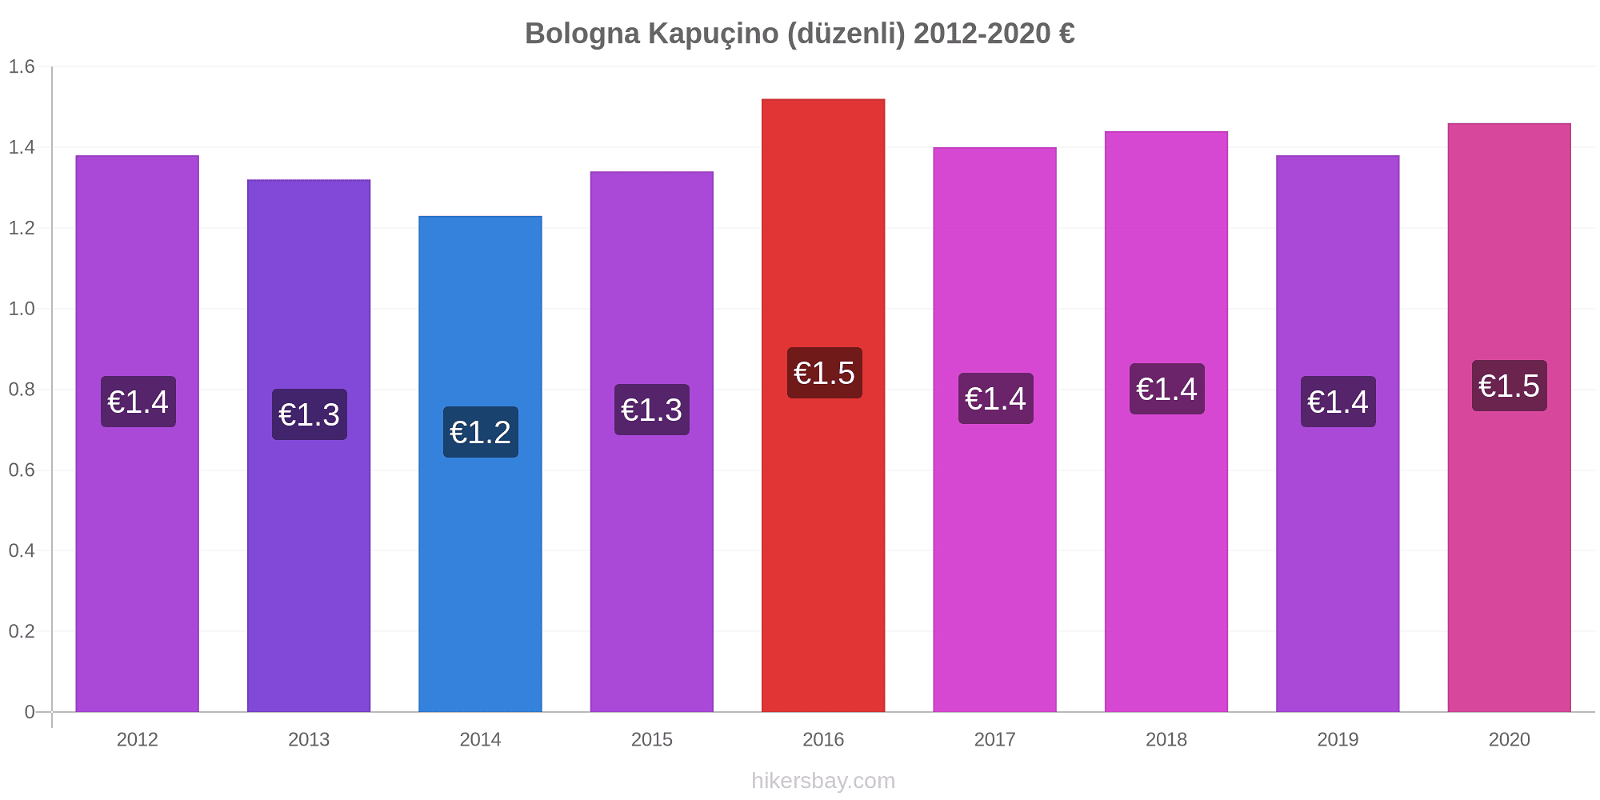 Bologna fiyat değişiklikleri Kapuçino (düzenli) hikersbay.com